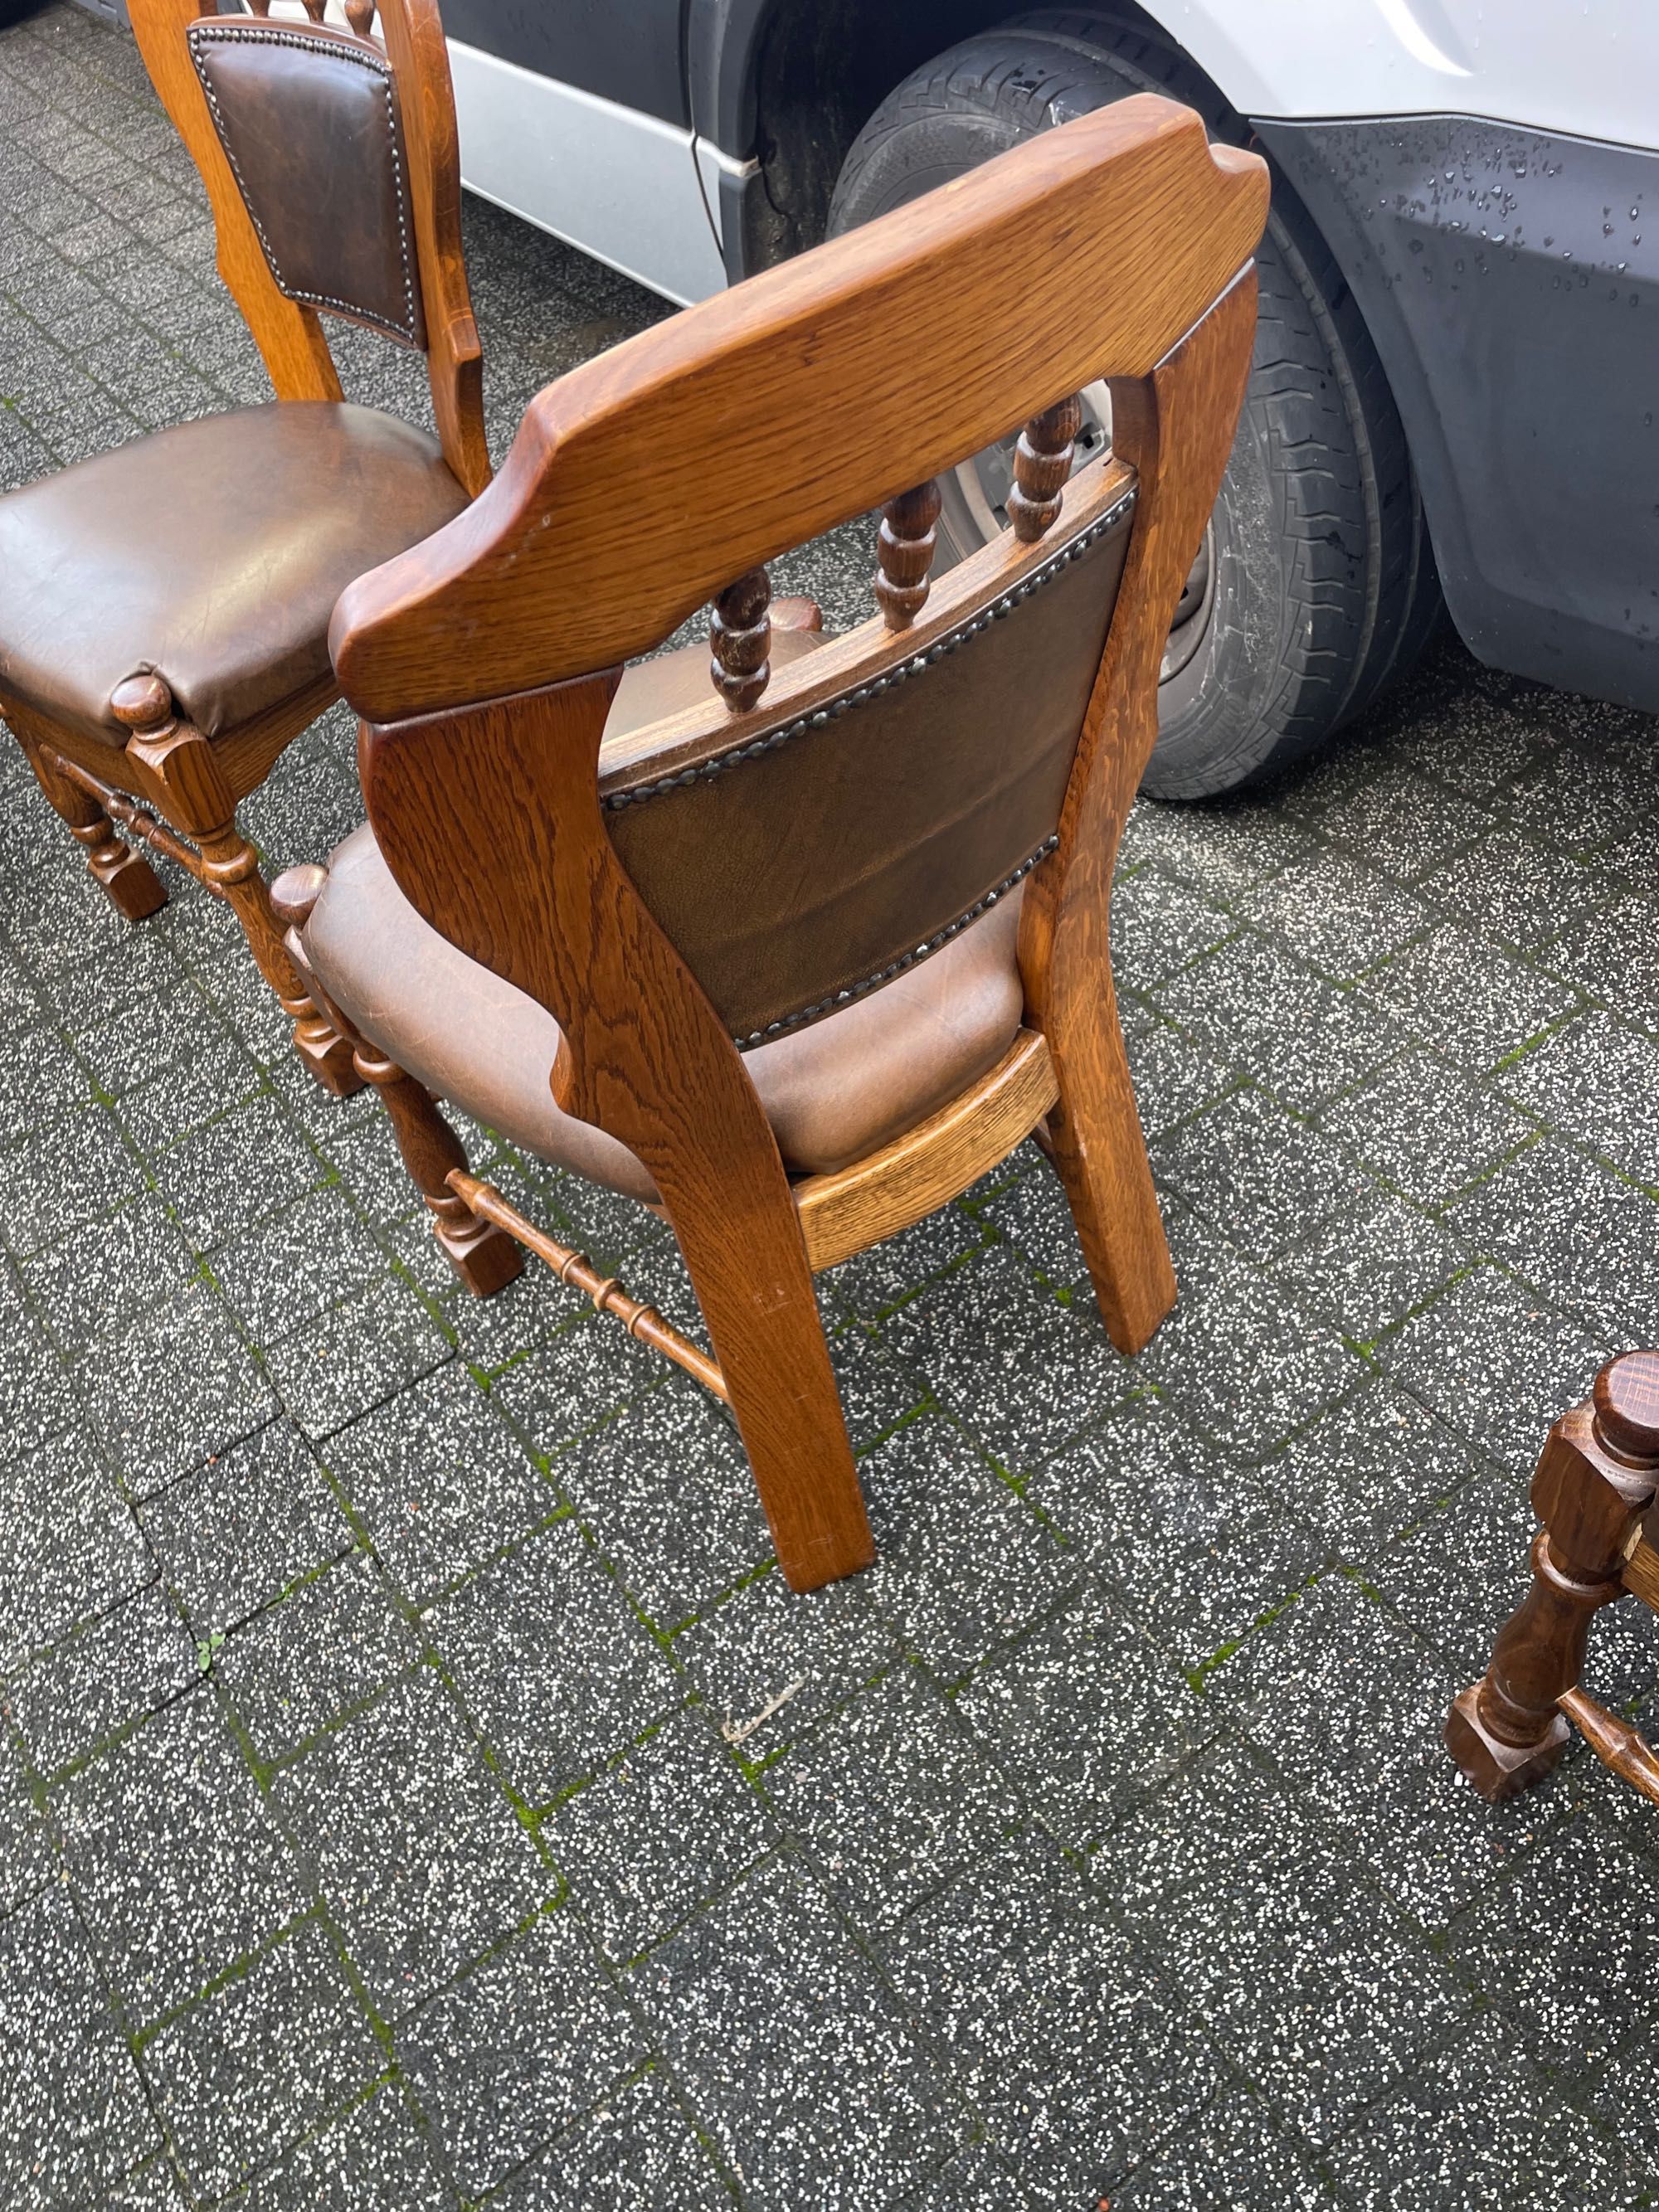 krzesła drewniane